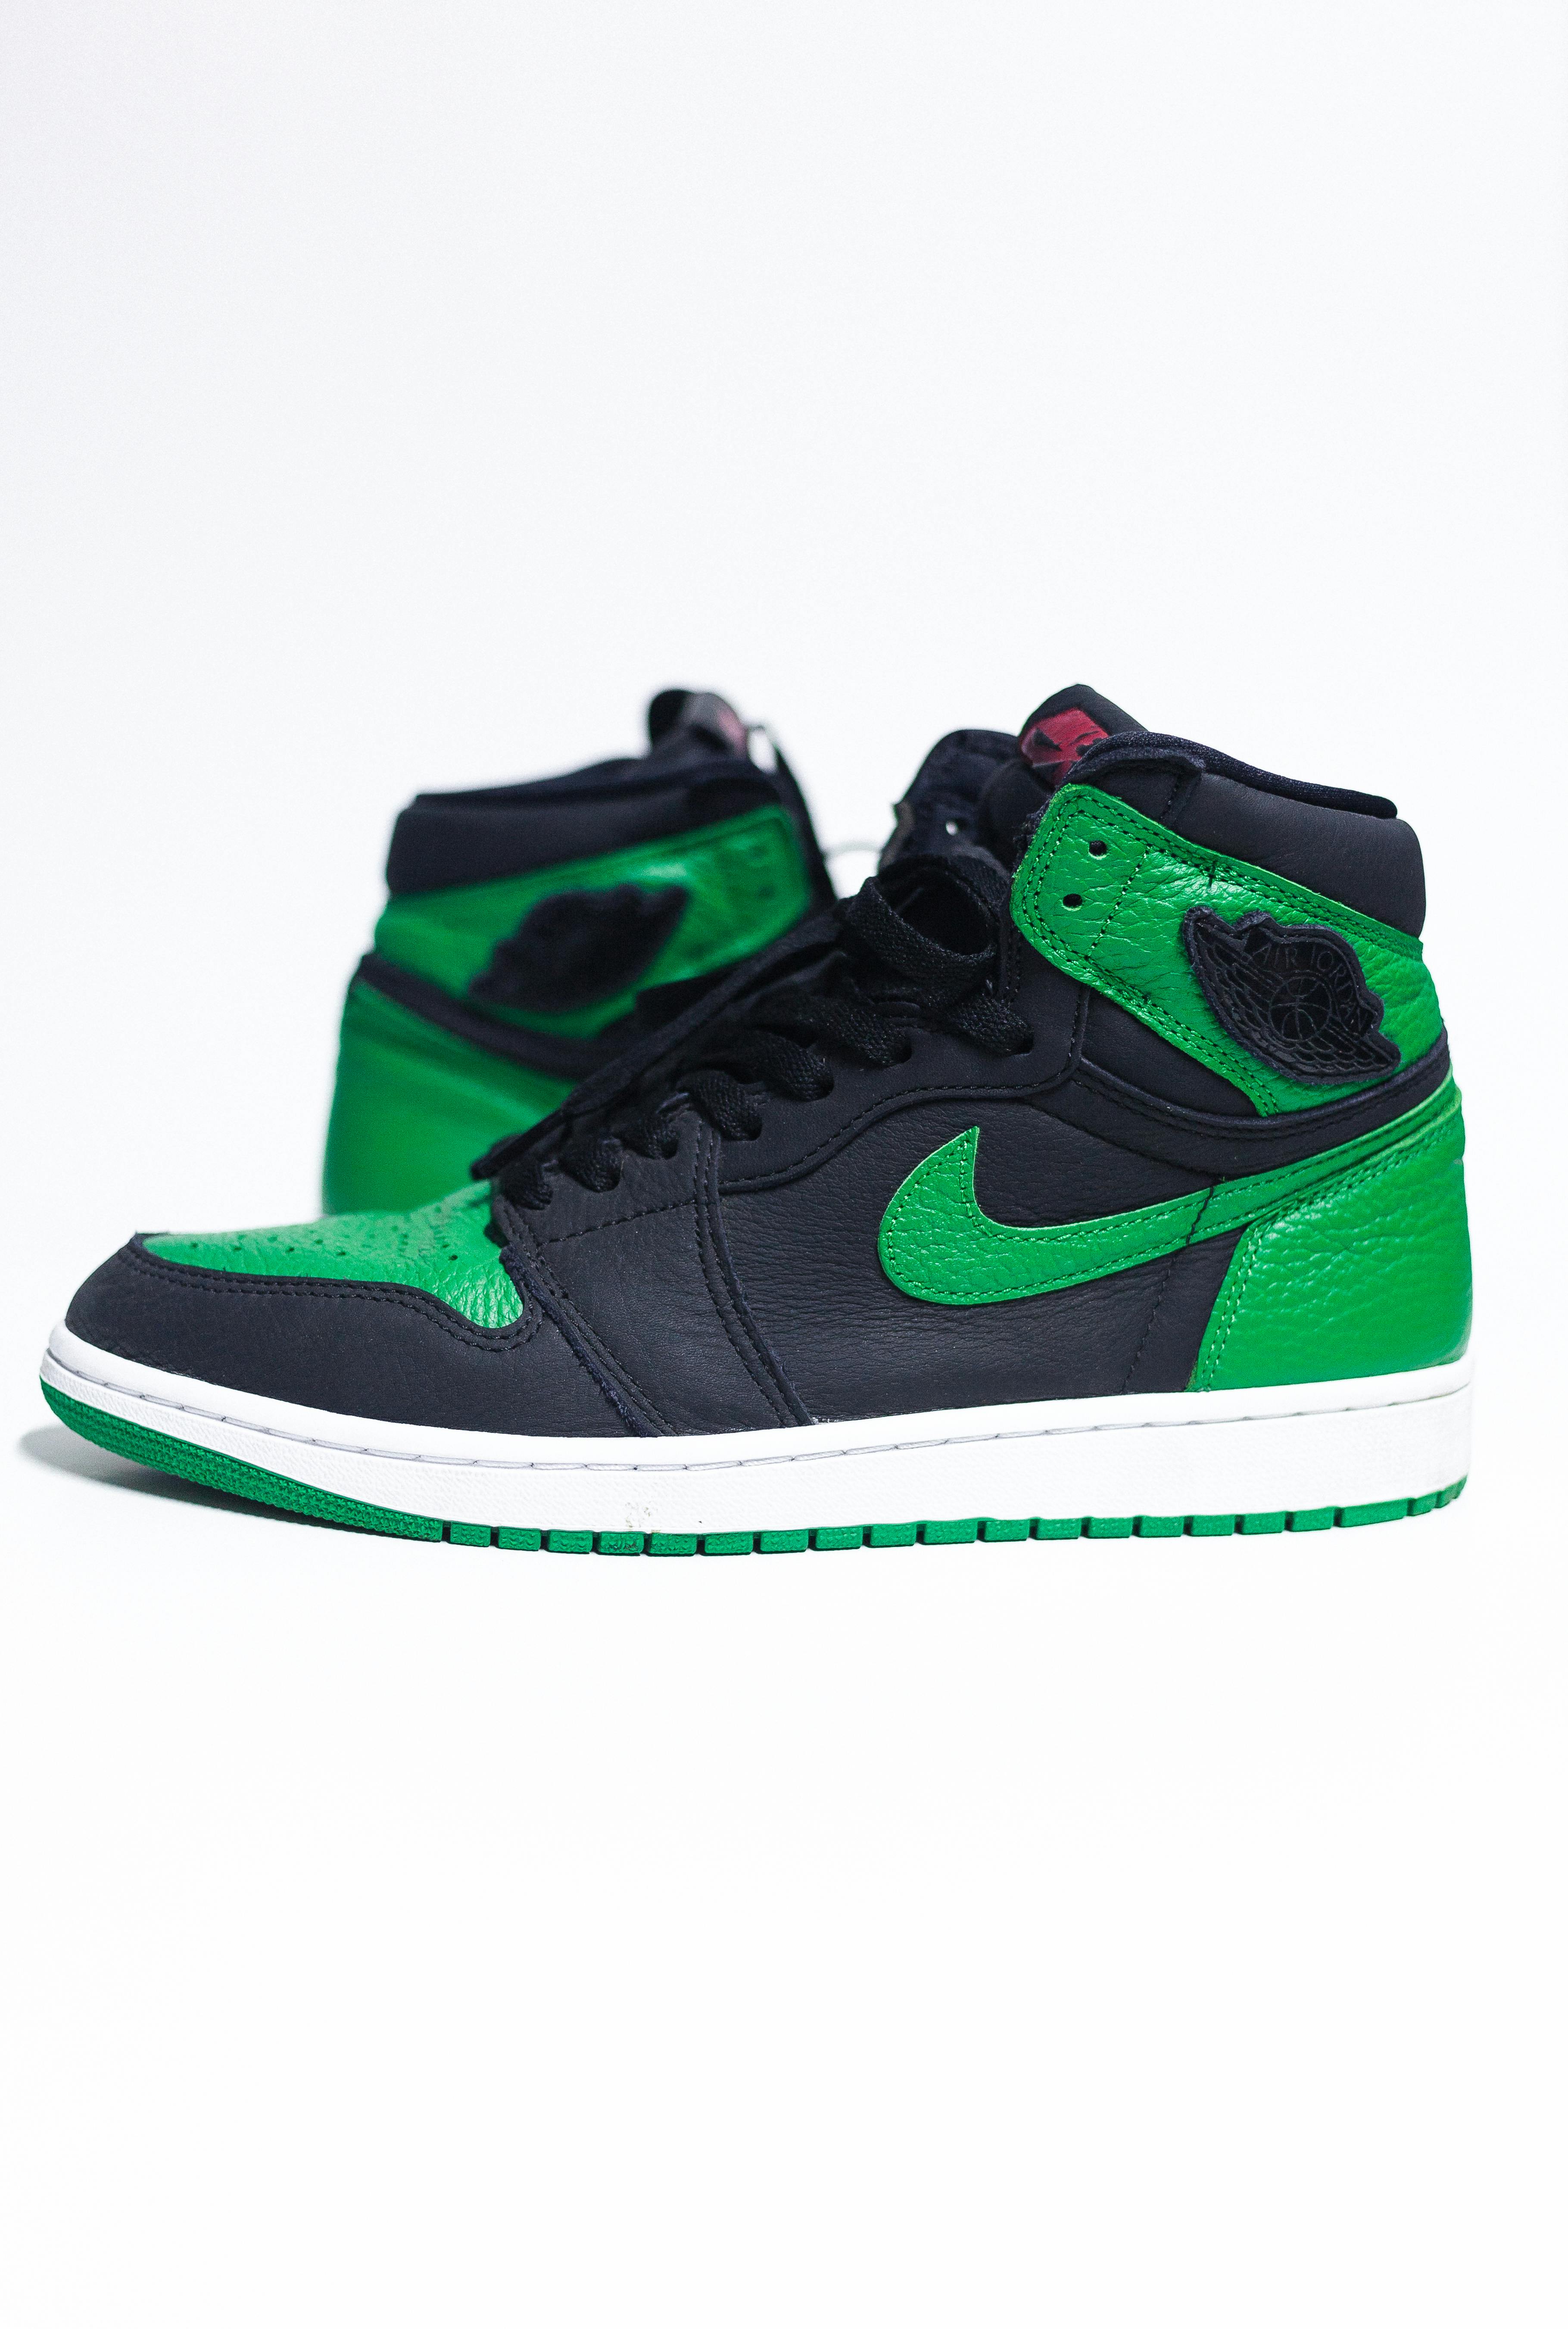 and Green Nike Air Jordan High Top Sneakers · Free Photo